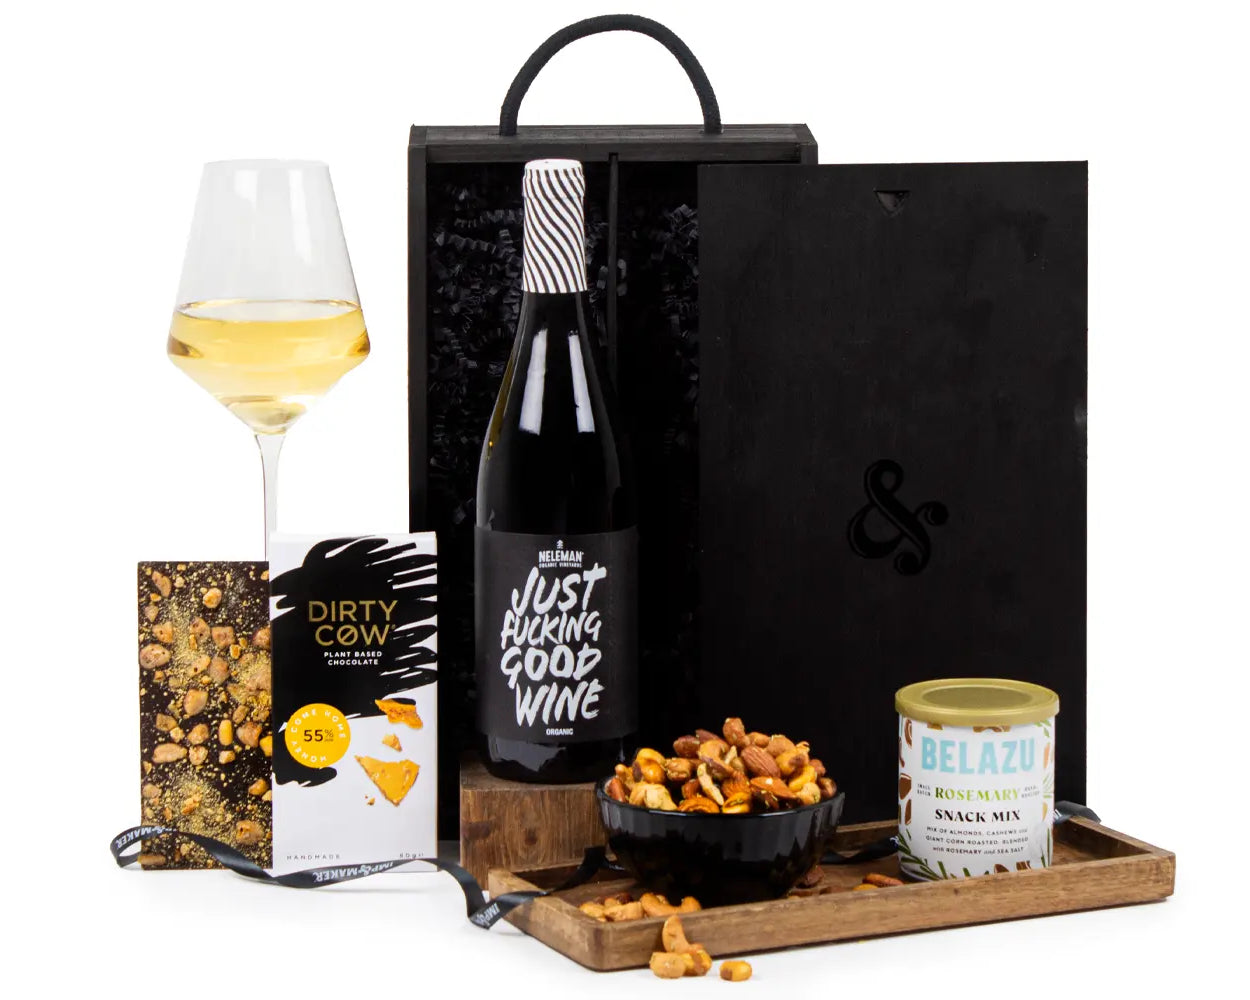 Vegan White Wine Gift Set in Wooden Box - IMP & MAKER